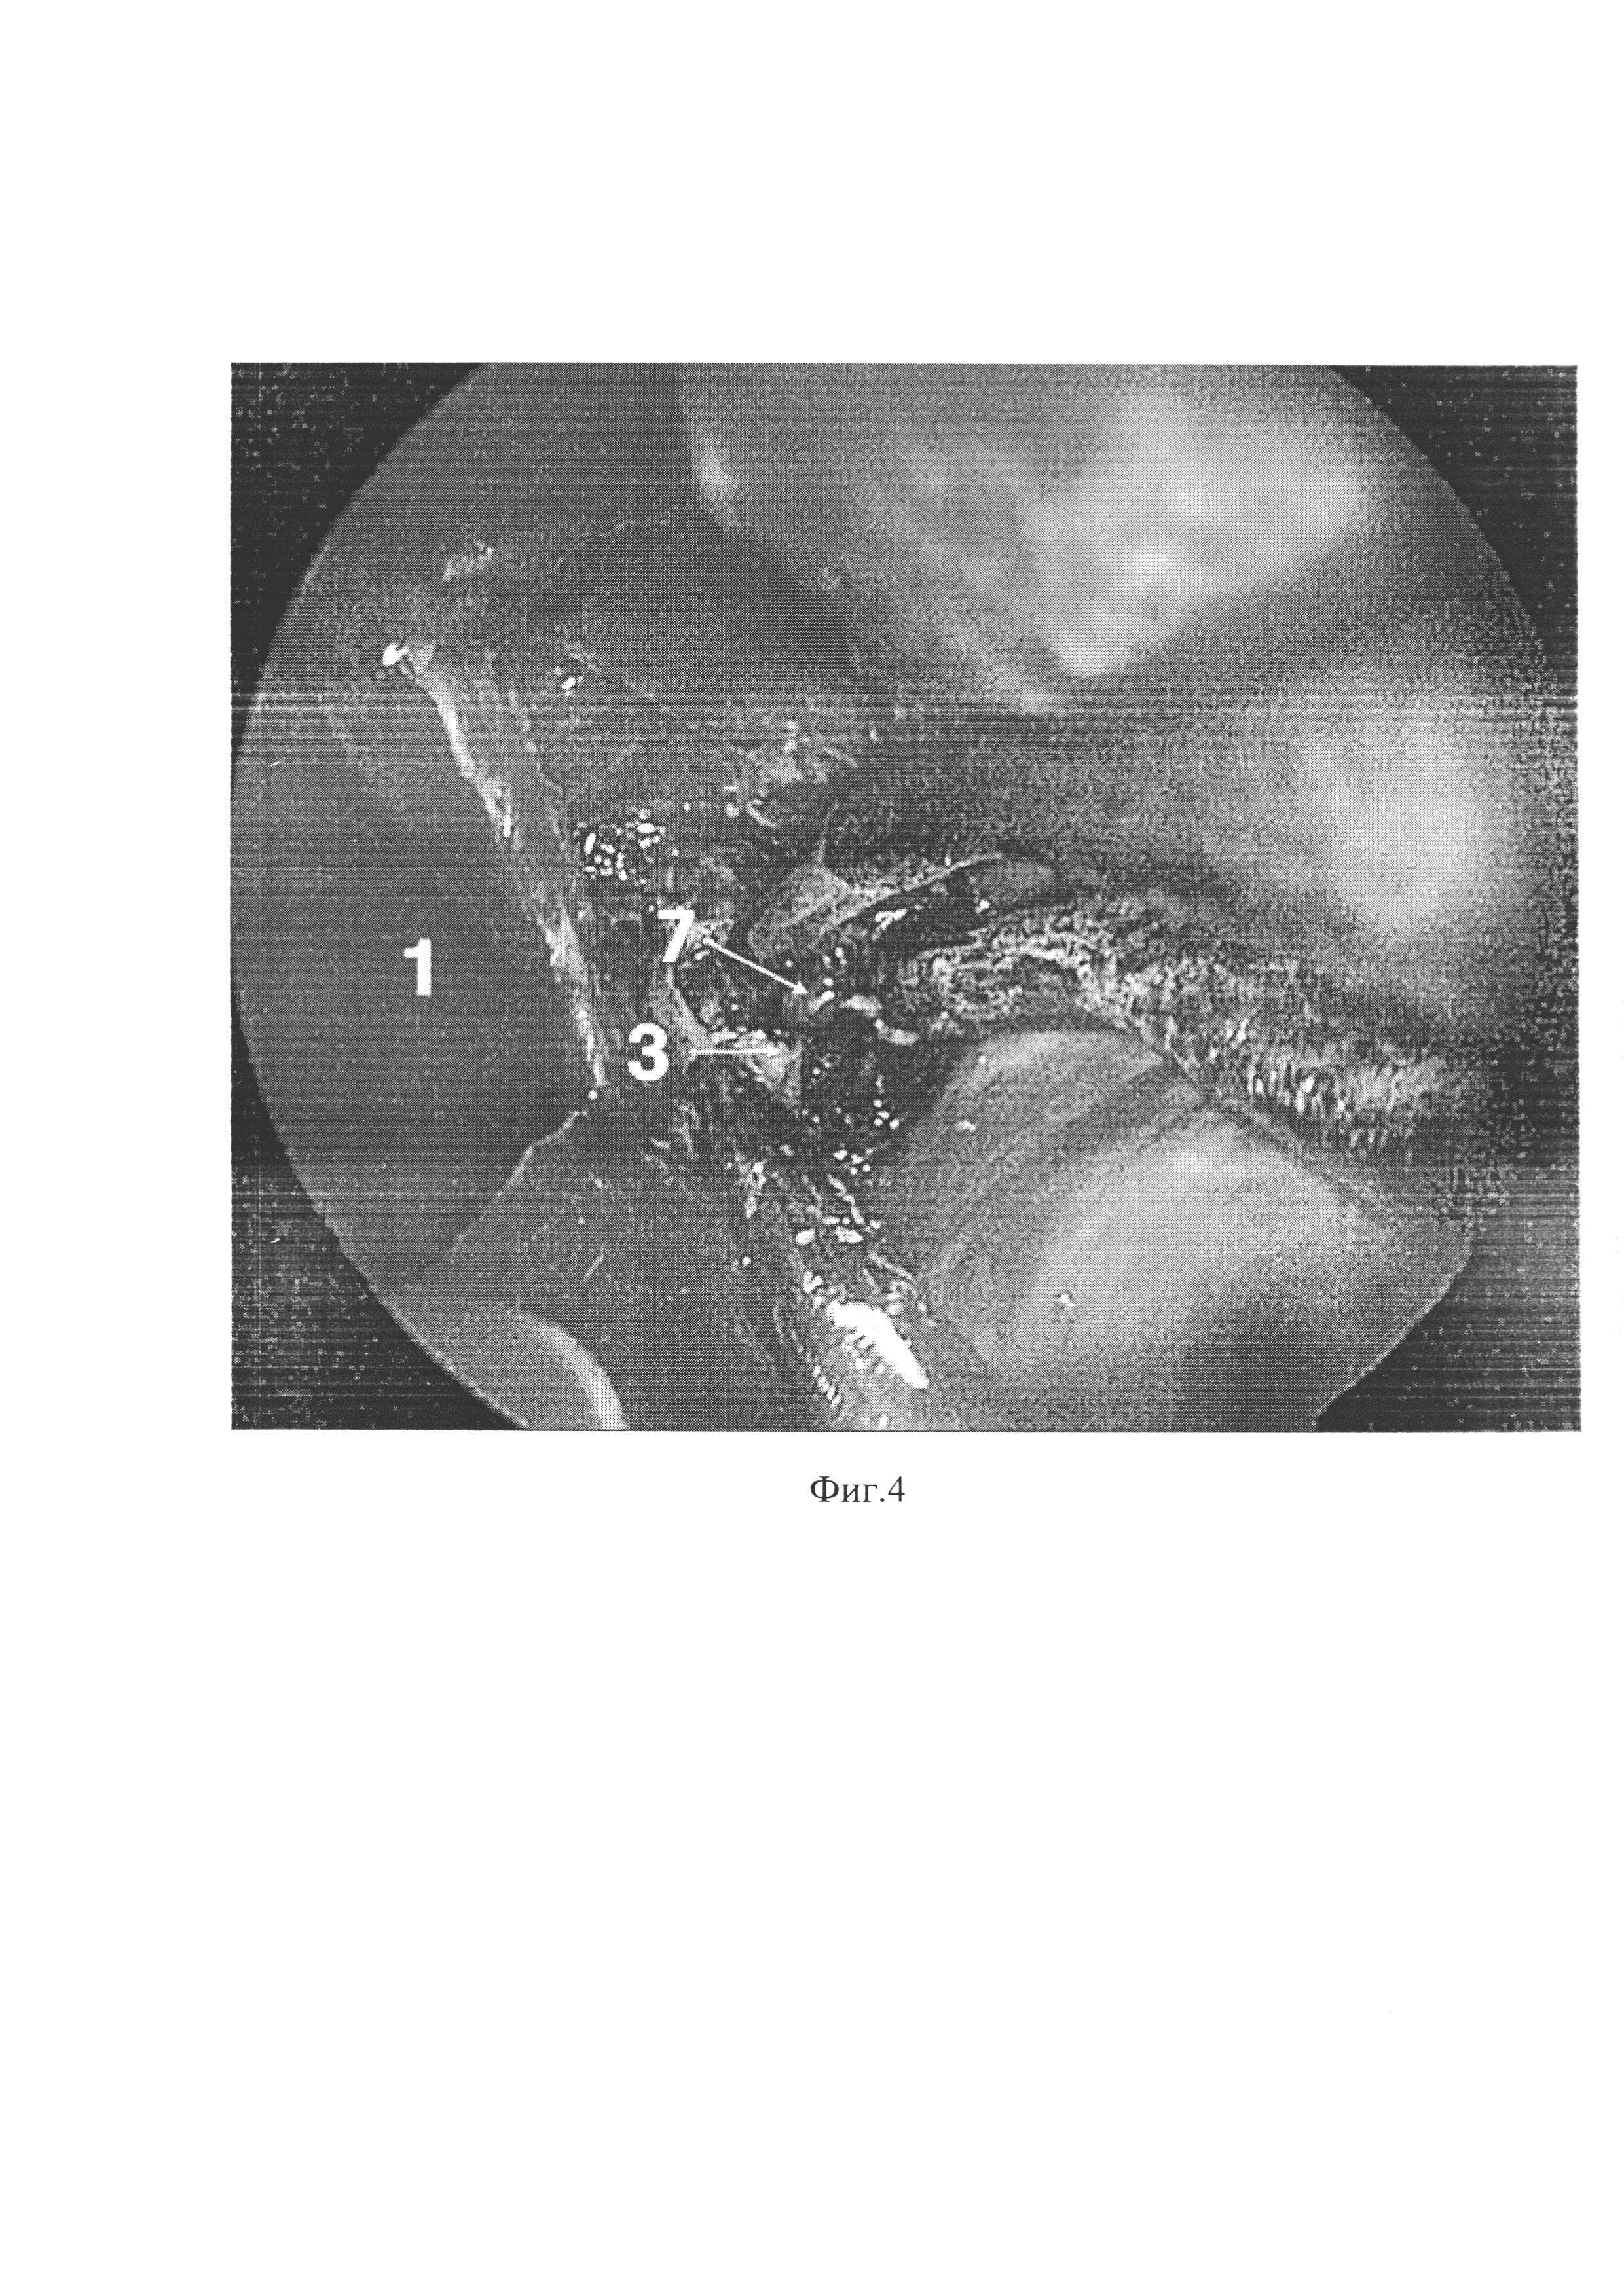 Способ улучшения визуализации хирургического поля во время эндоскопической эндоназальной операции у пациентов с полипозным риносинуситом